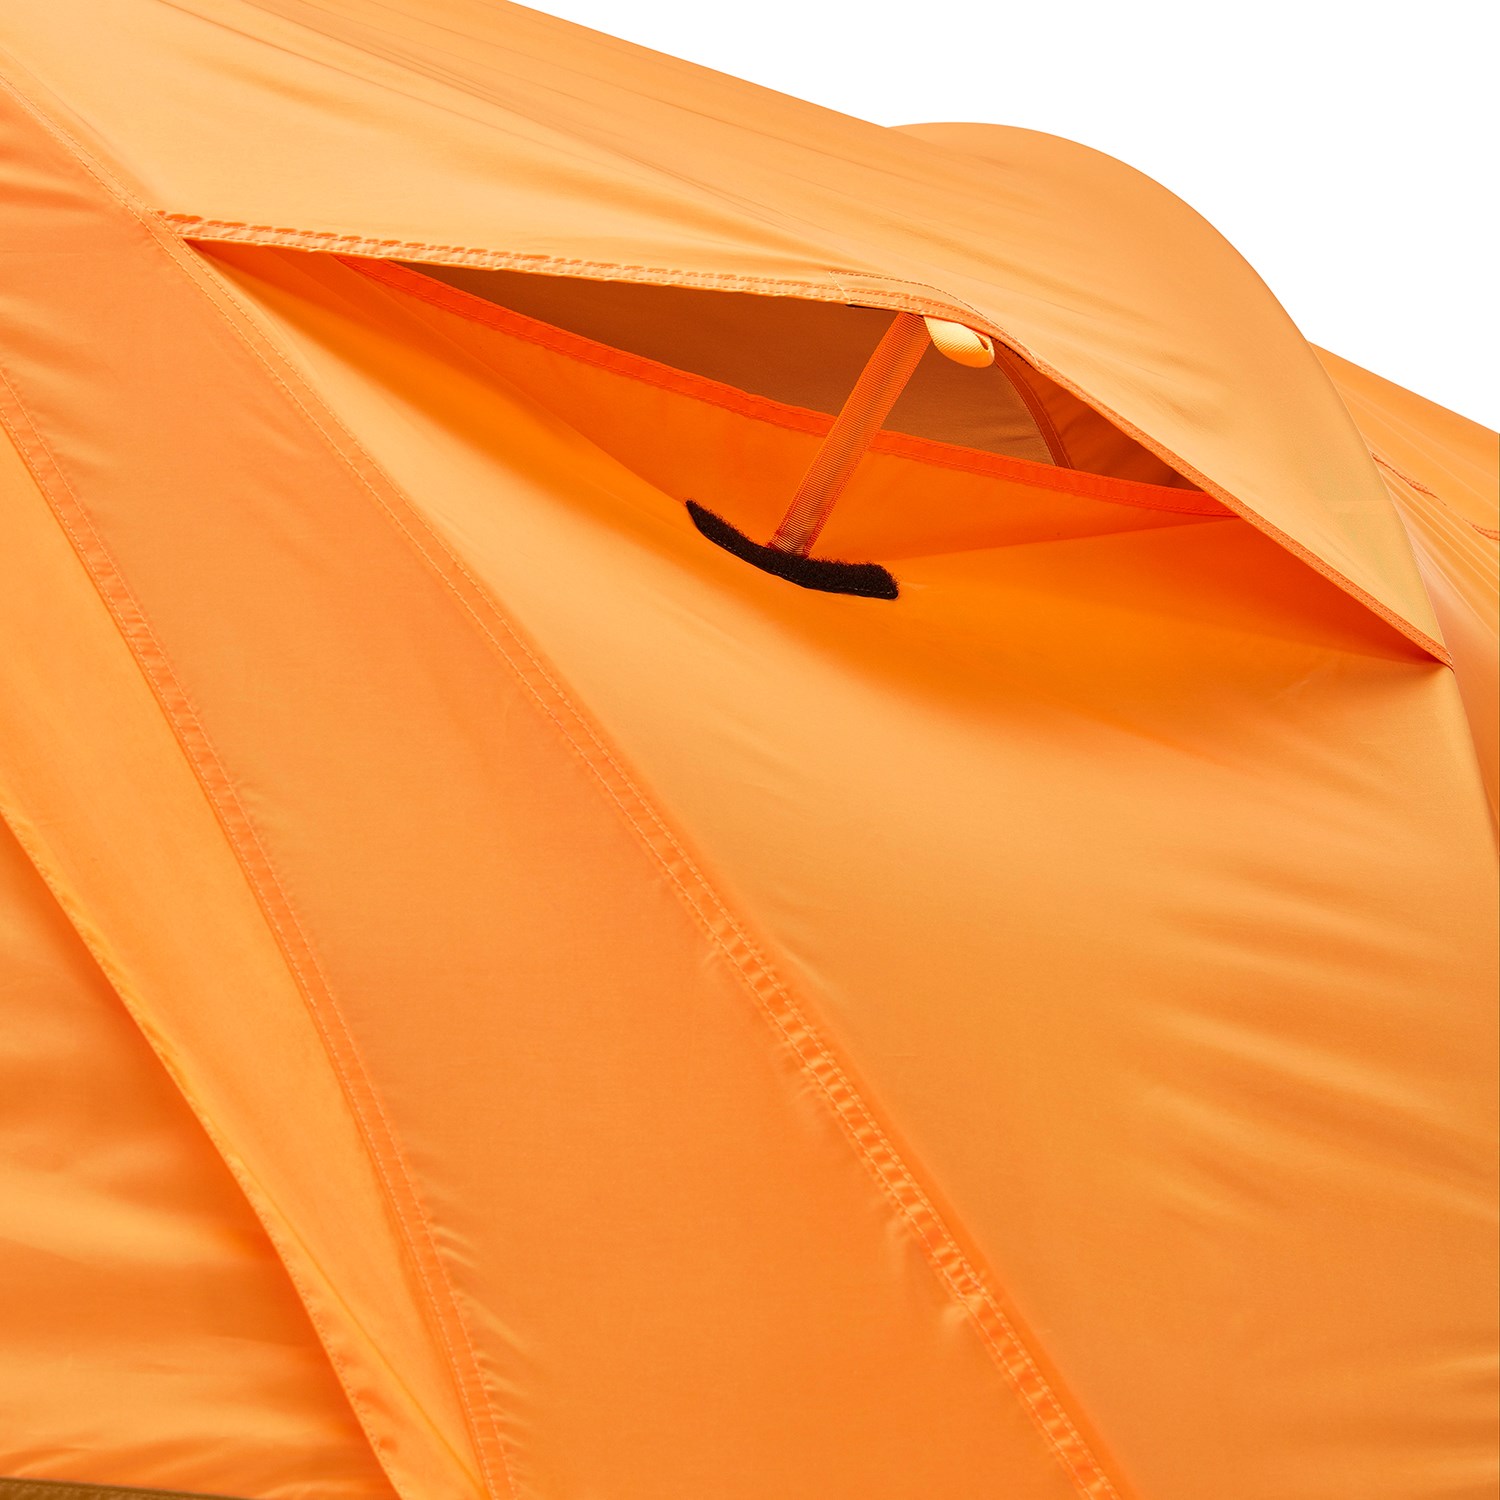 The North Face Wawona 6-Person Tent | evo